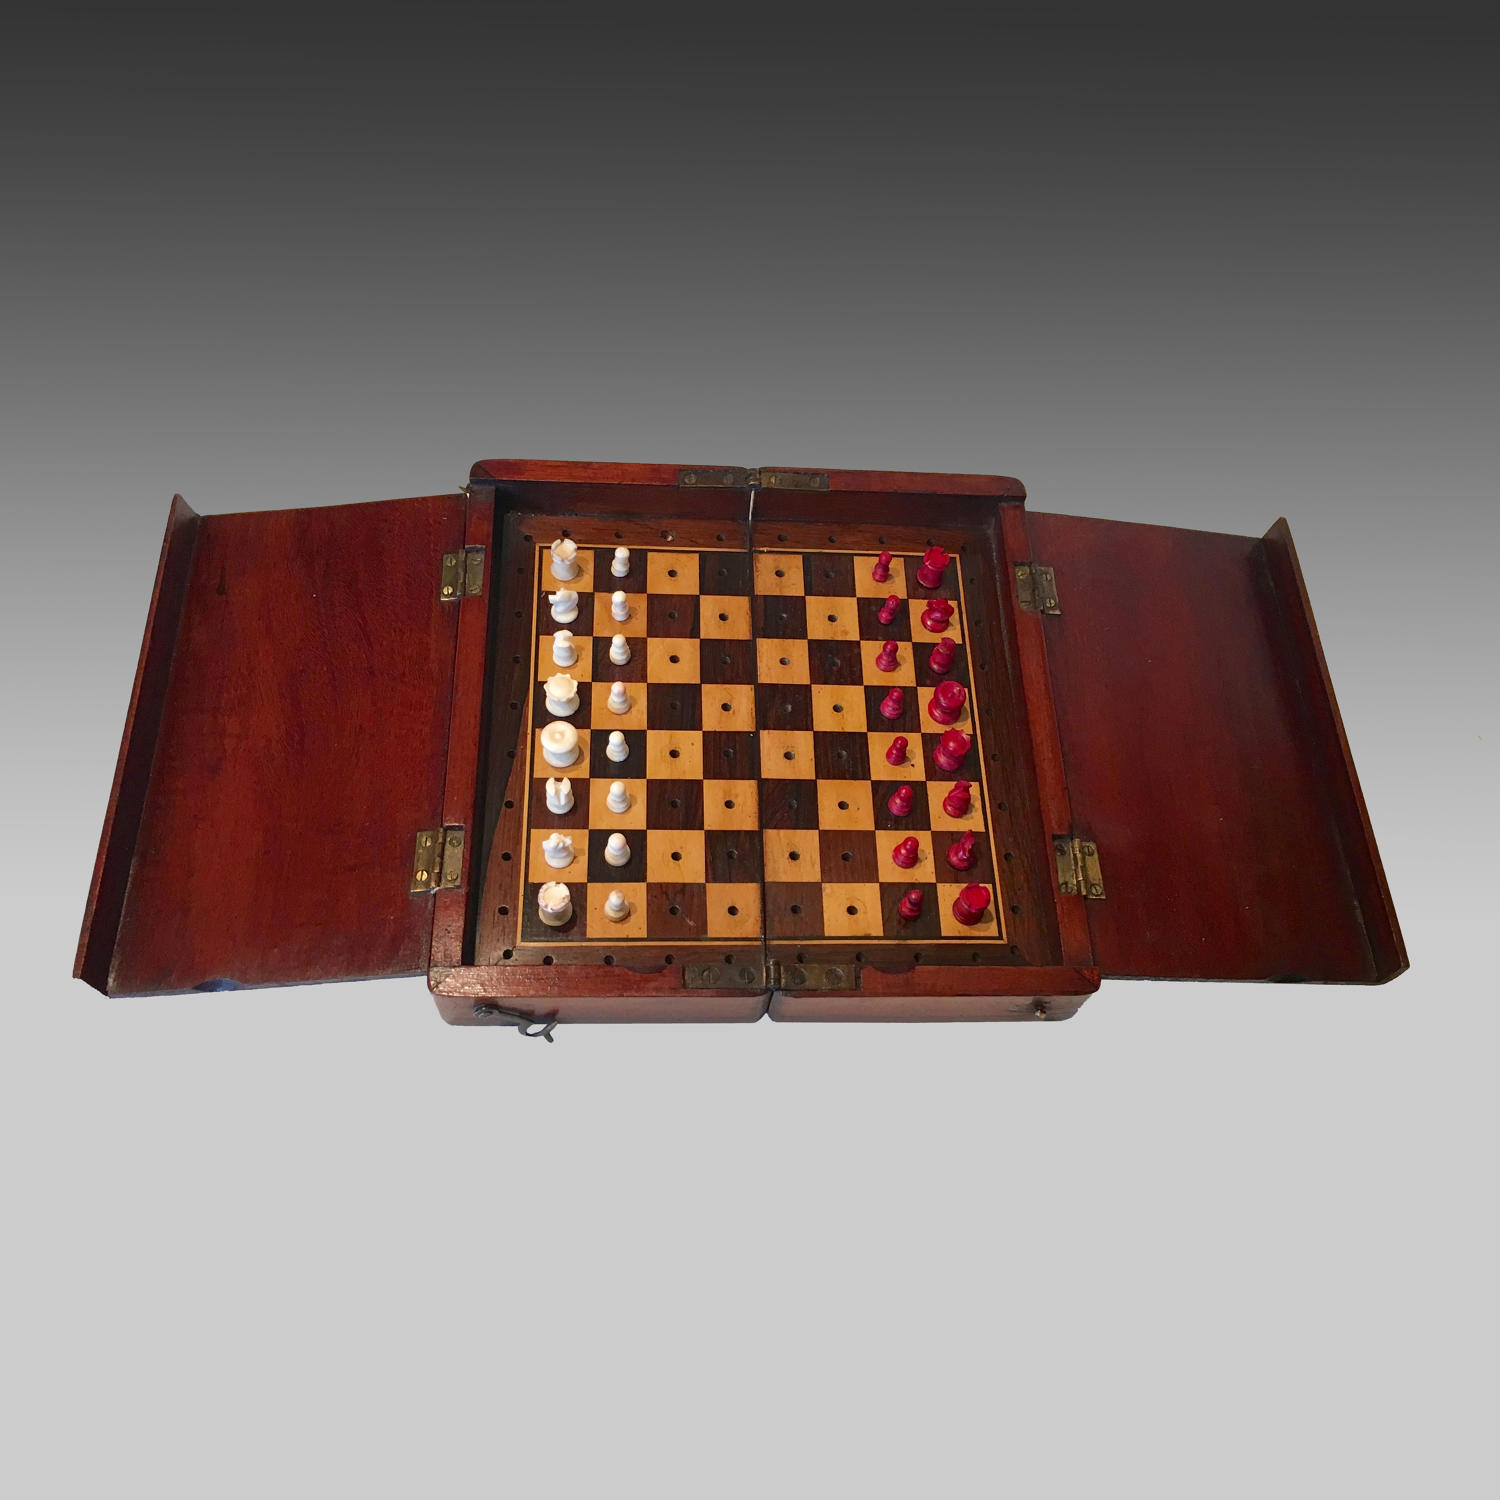 'The Whittington' mahogany cased travelling chess set